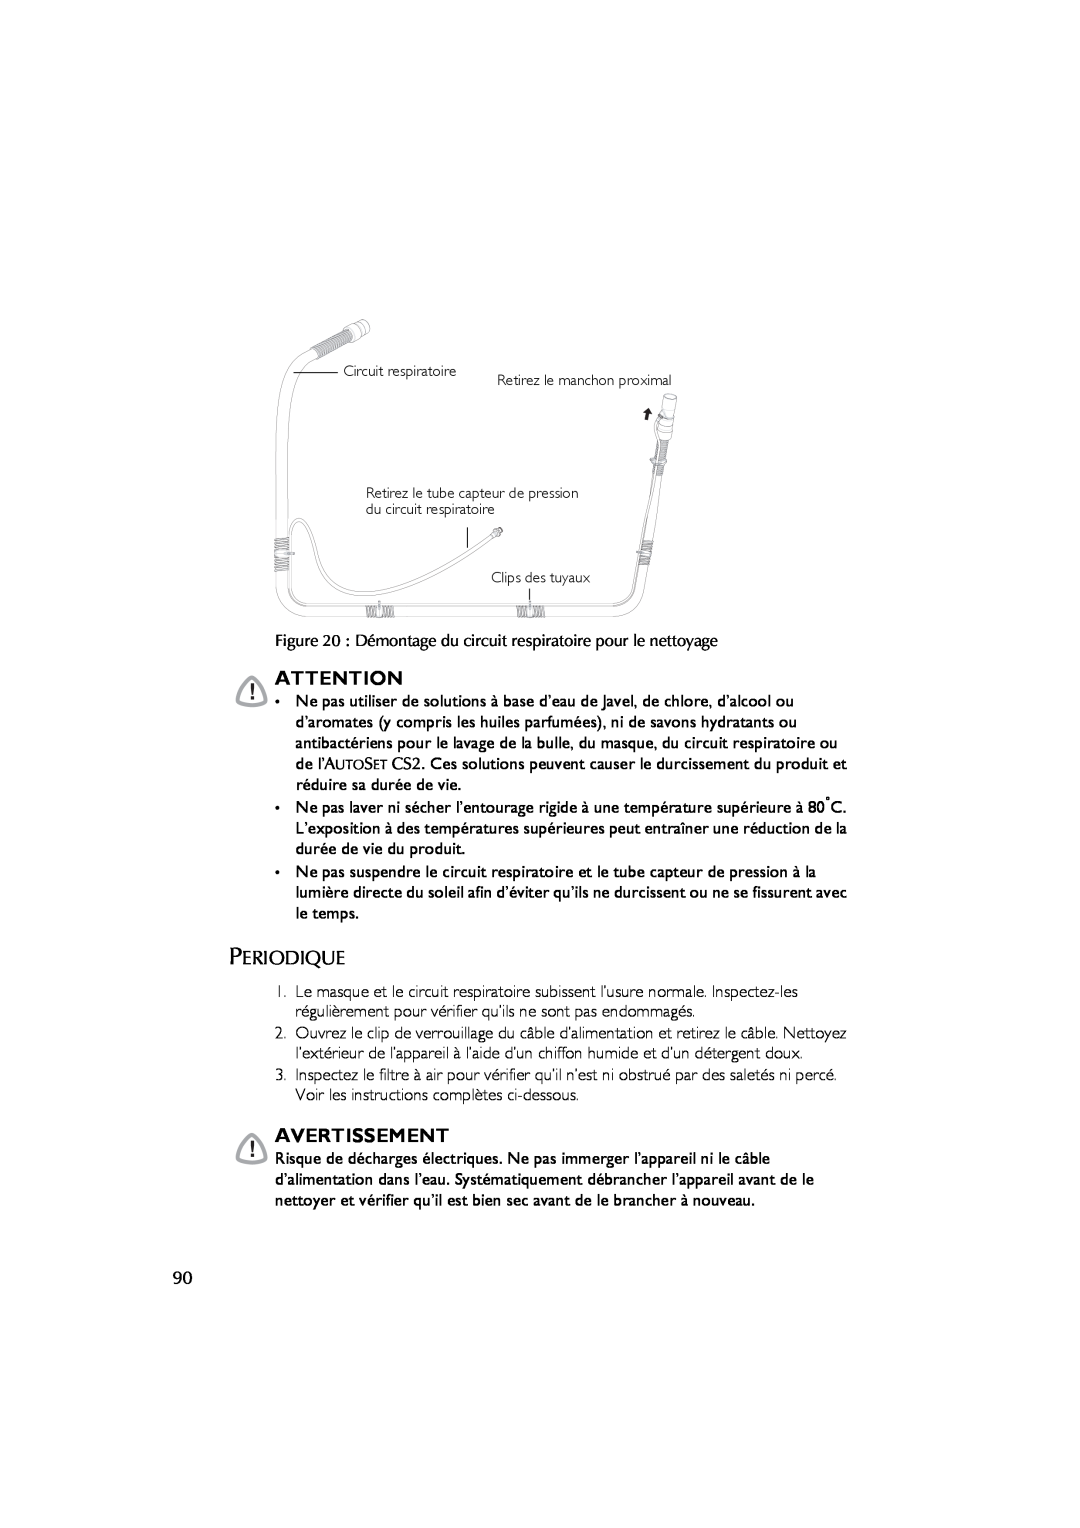 ResMed AutoSet CS 2 user manual Avertissement, Periodique, Démontage du circuit respiratoire pour le nettoyage 